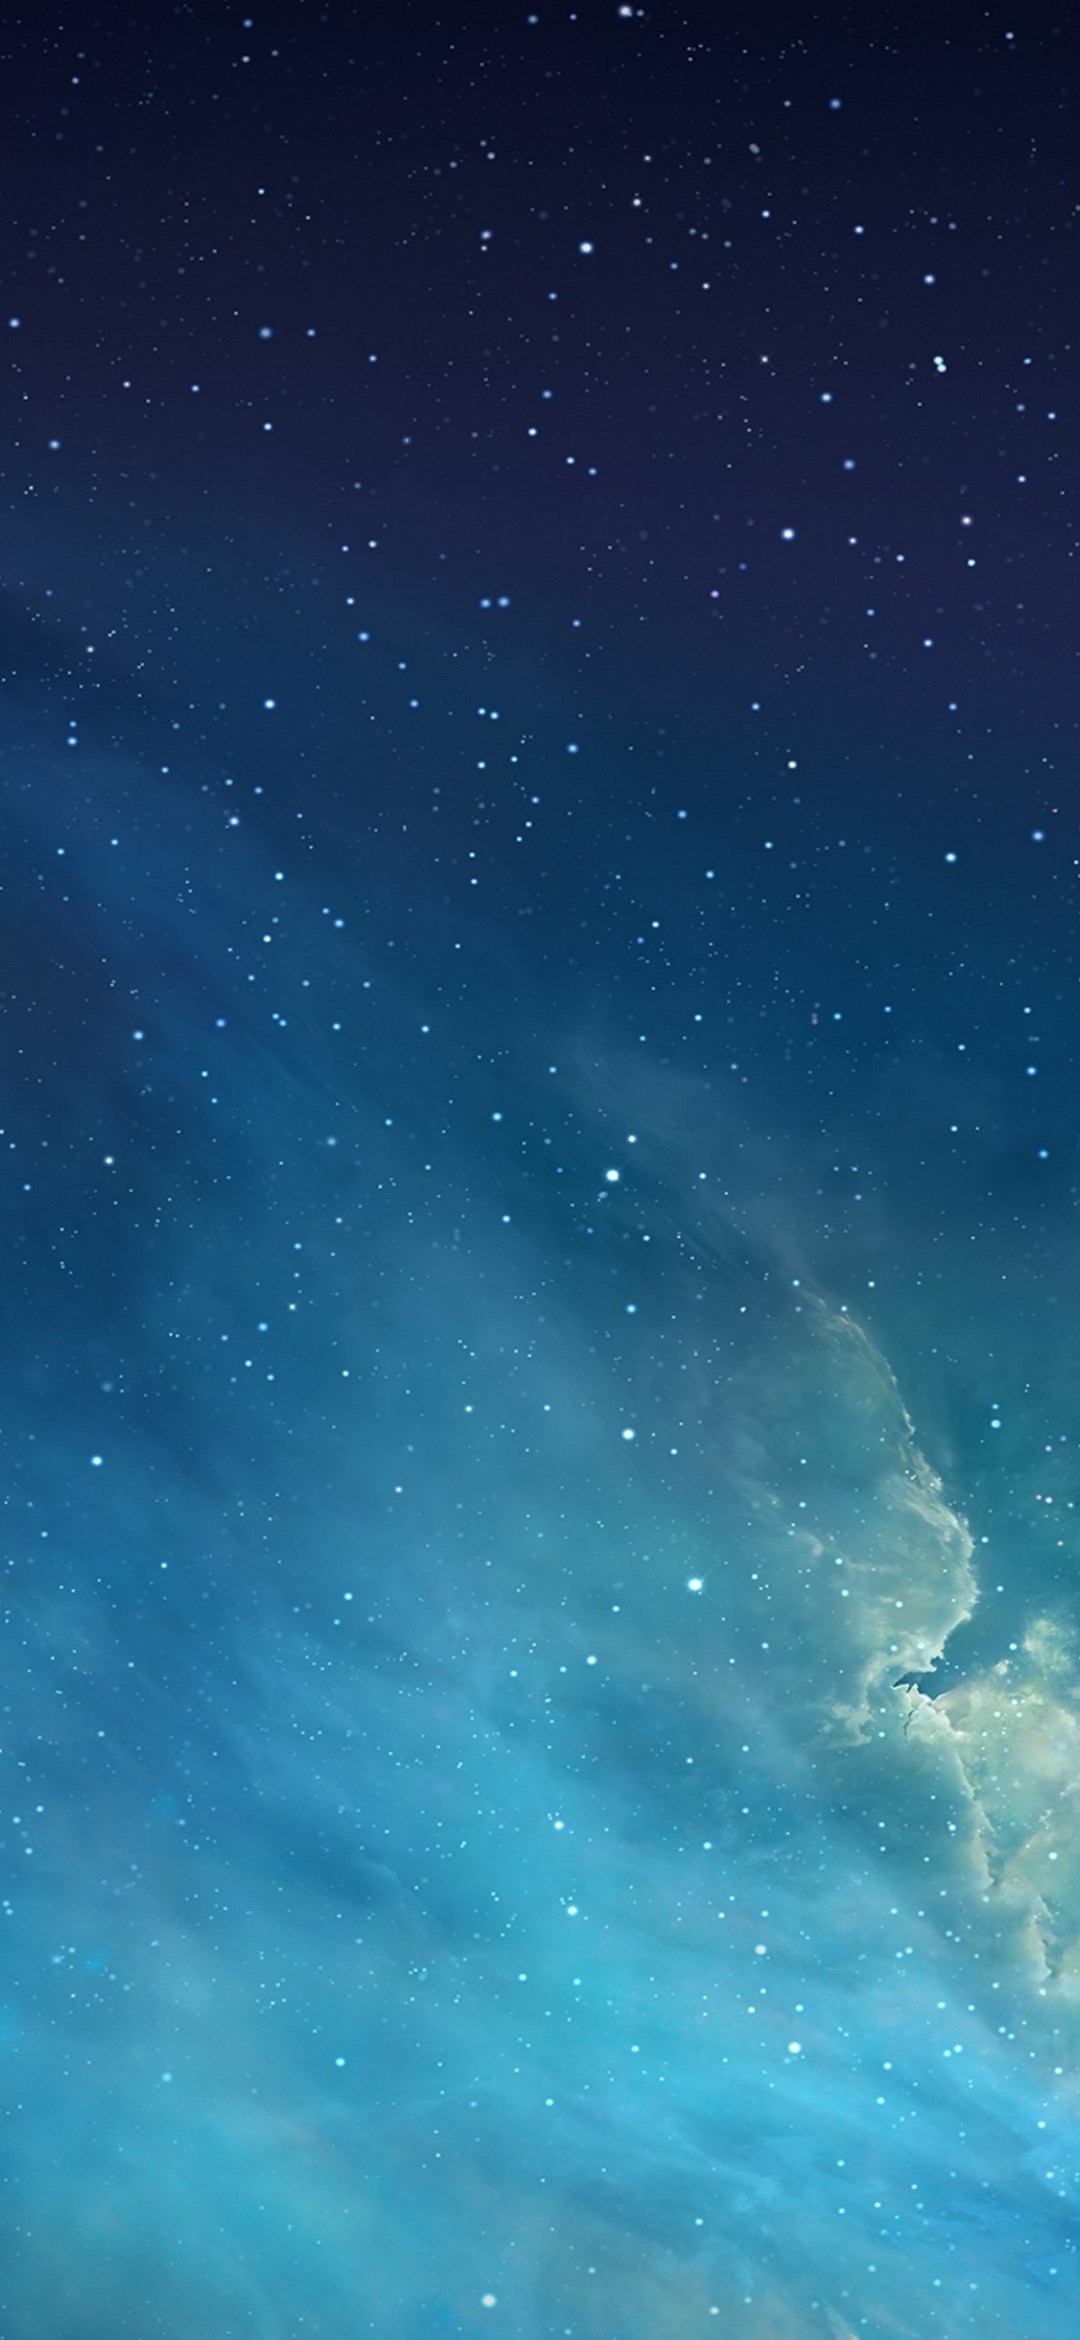 水色と青のグラデーションの星空 Zenfone 6 Android 壁紙 待ち受け スマラン